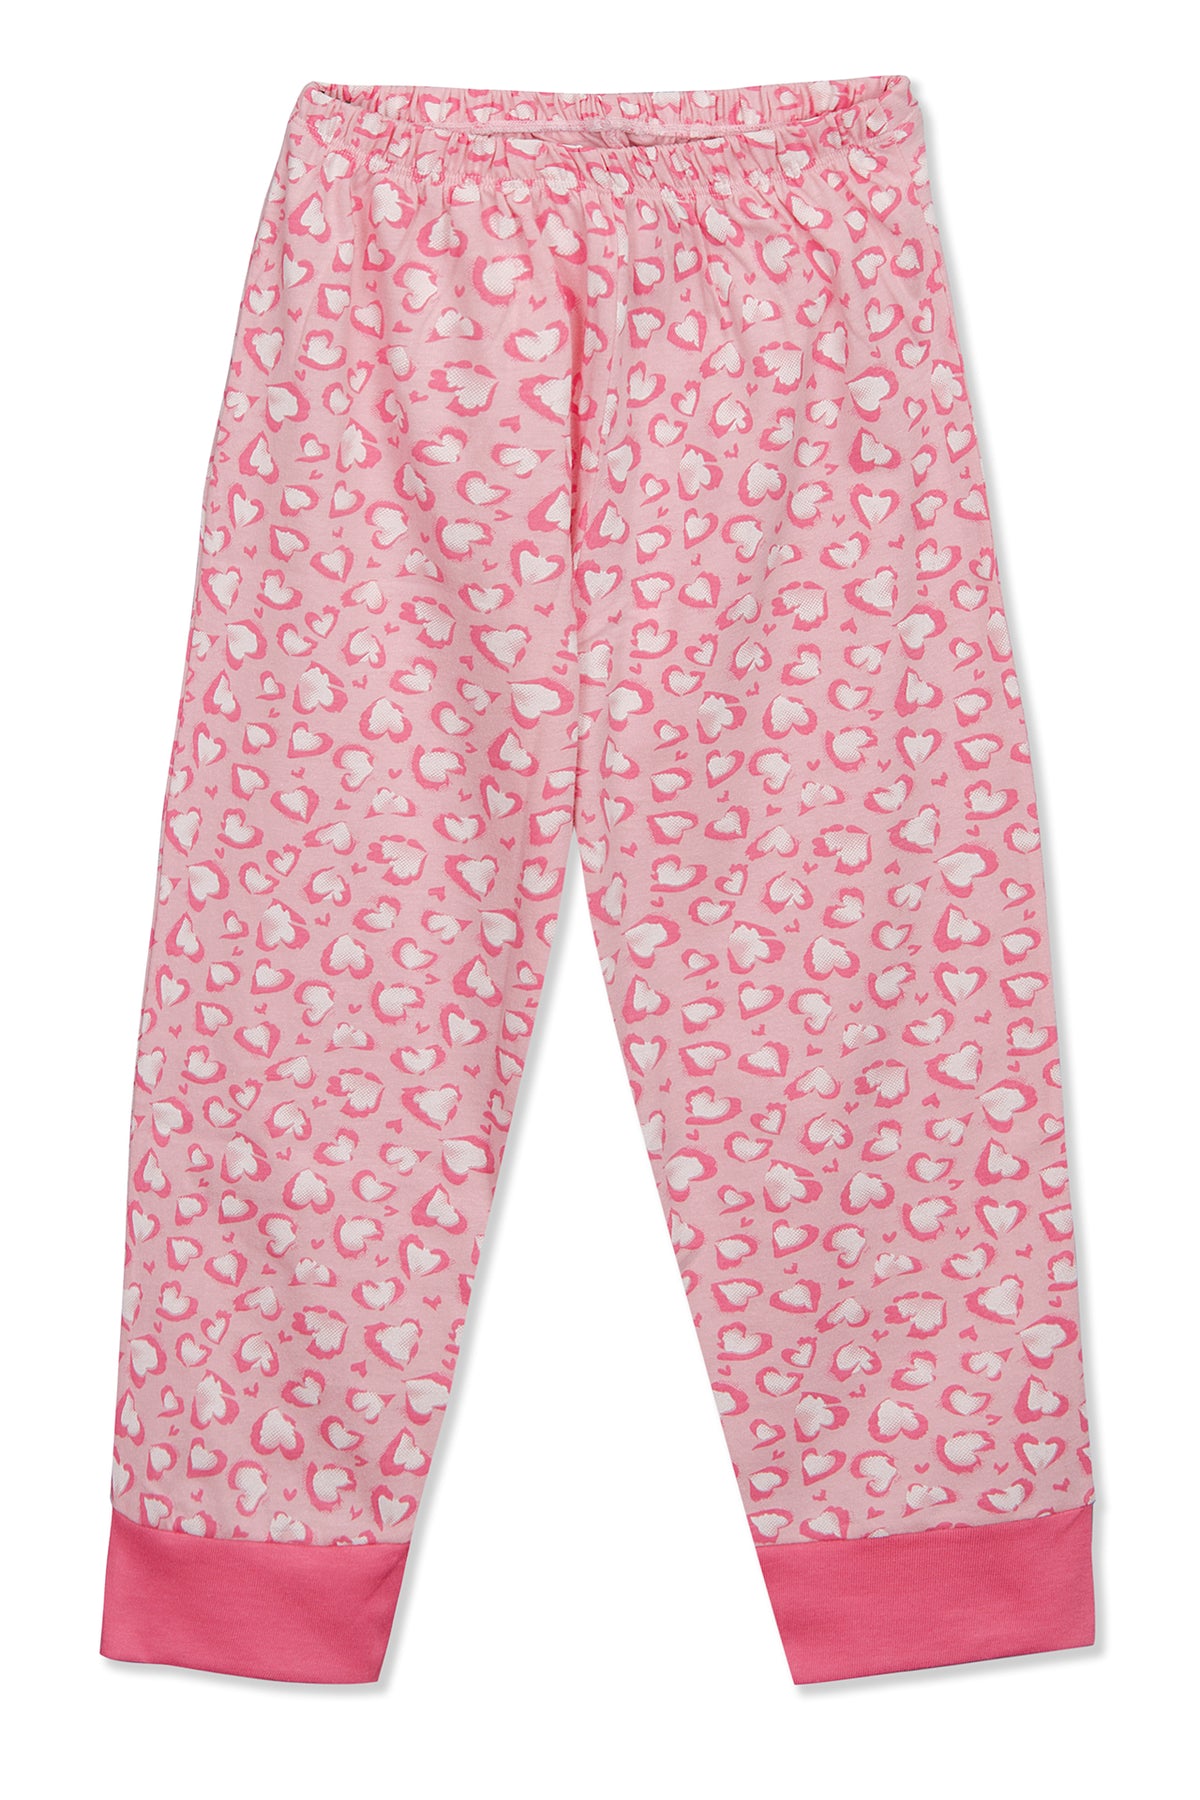 Hearty Love Print Pyjama Set